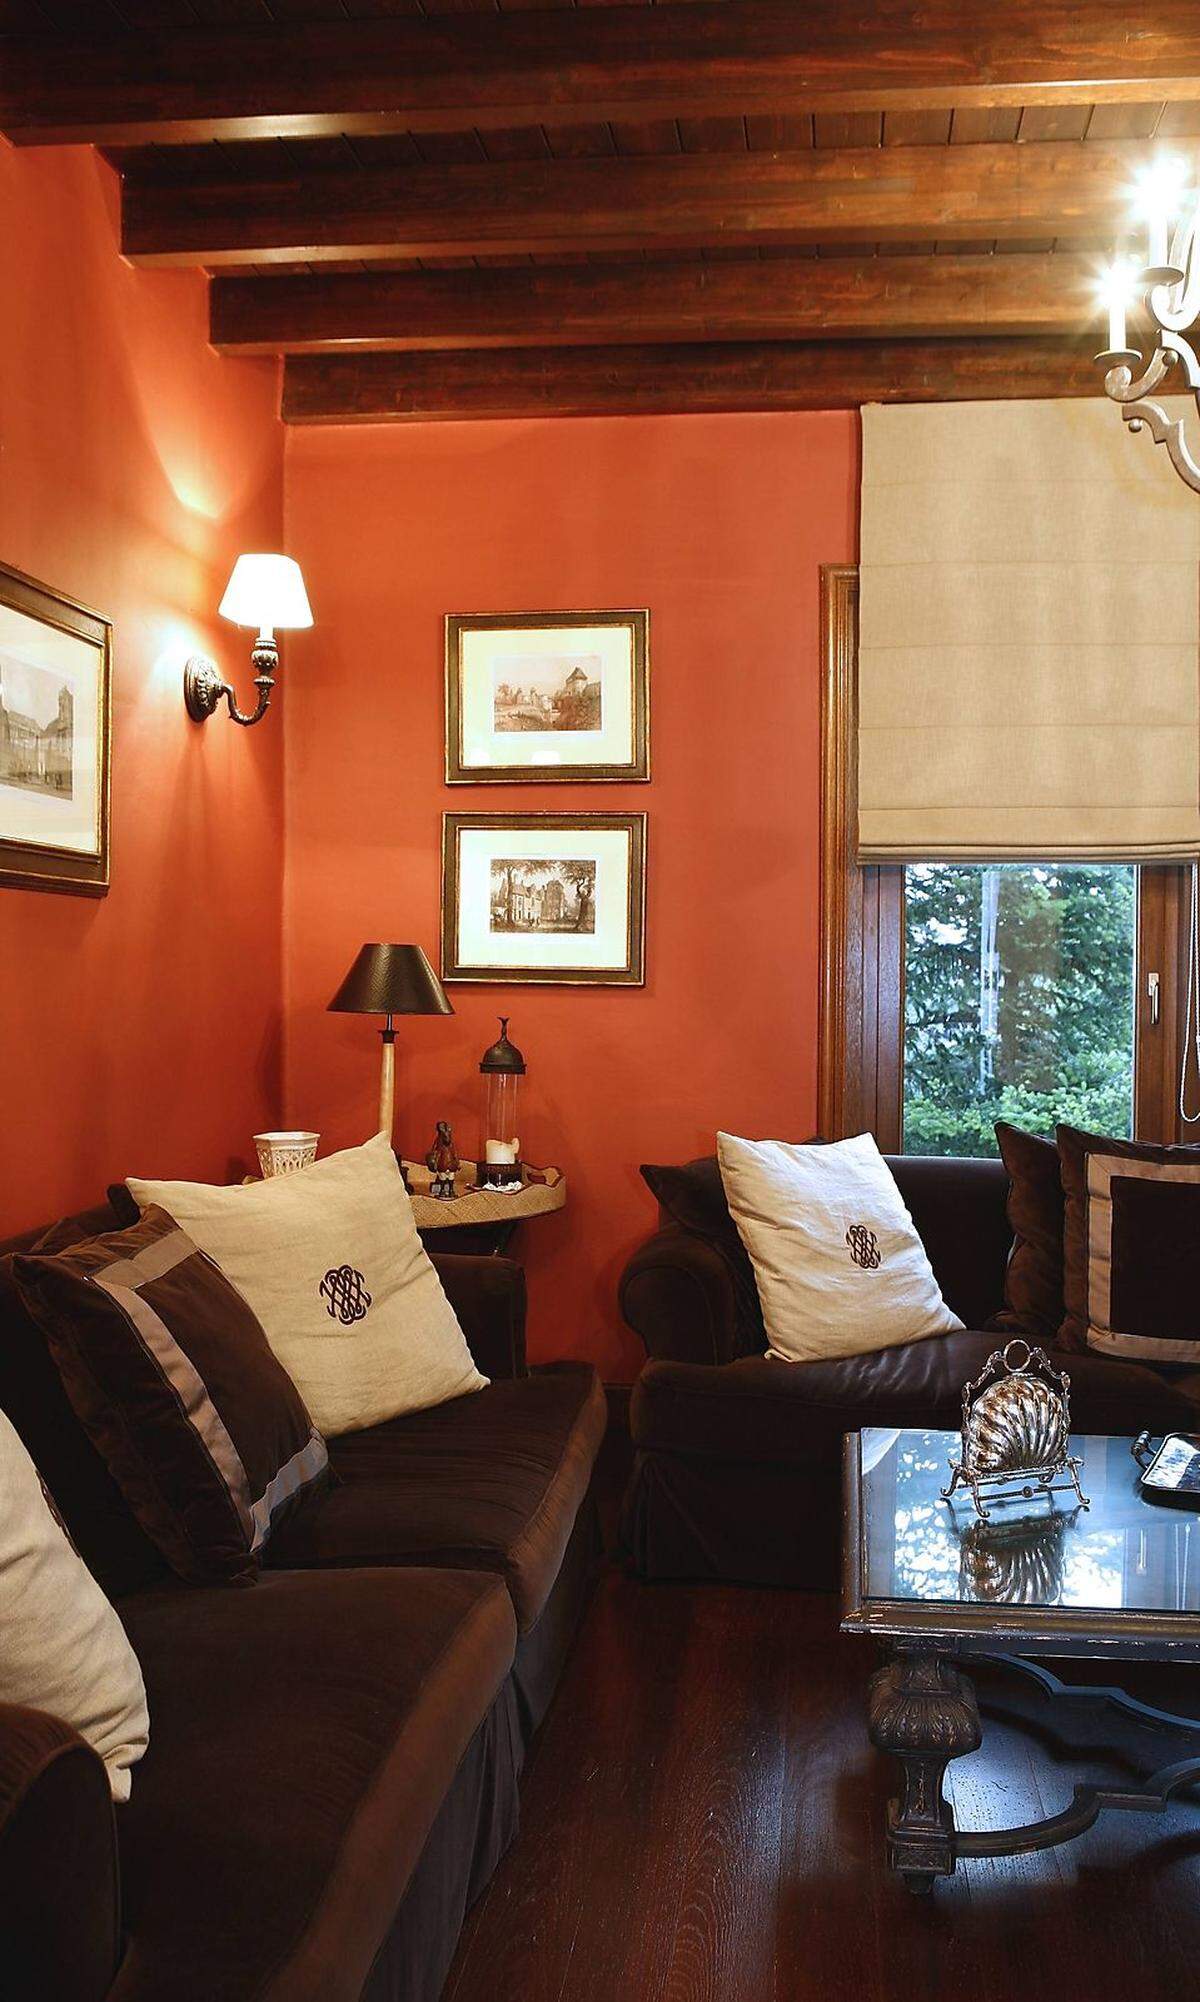 Das Wohnzimmer der 90er-Jahre erstrahlt in warmen Buchen- und Terrakotta-Tönen. Orange findet sich auf Bodenfliesen und als Farbe an den Wänden. Klick-Laminat sorgt für das einfache Verlegen von Böden. Lavalampen erfreuen sich höchster Beliebtheit.